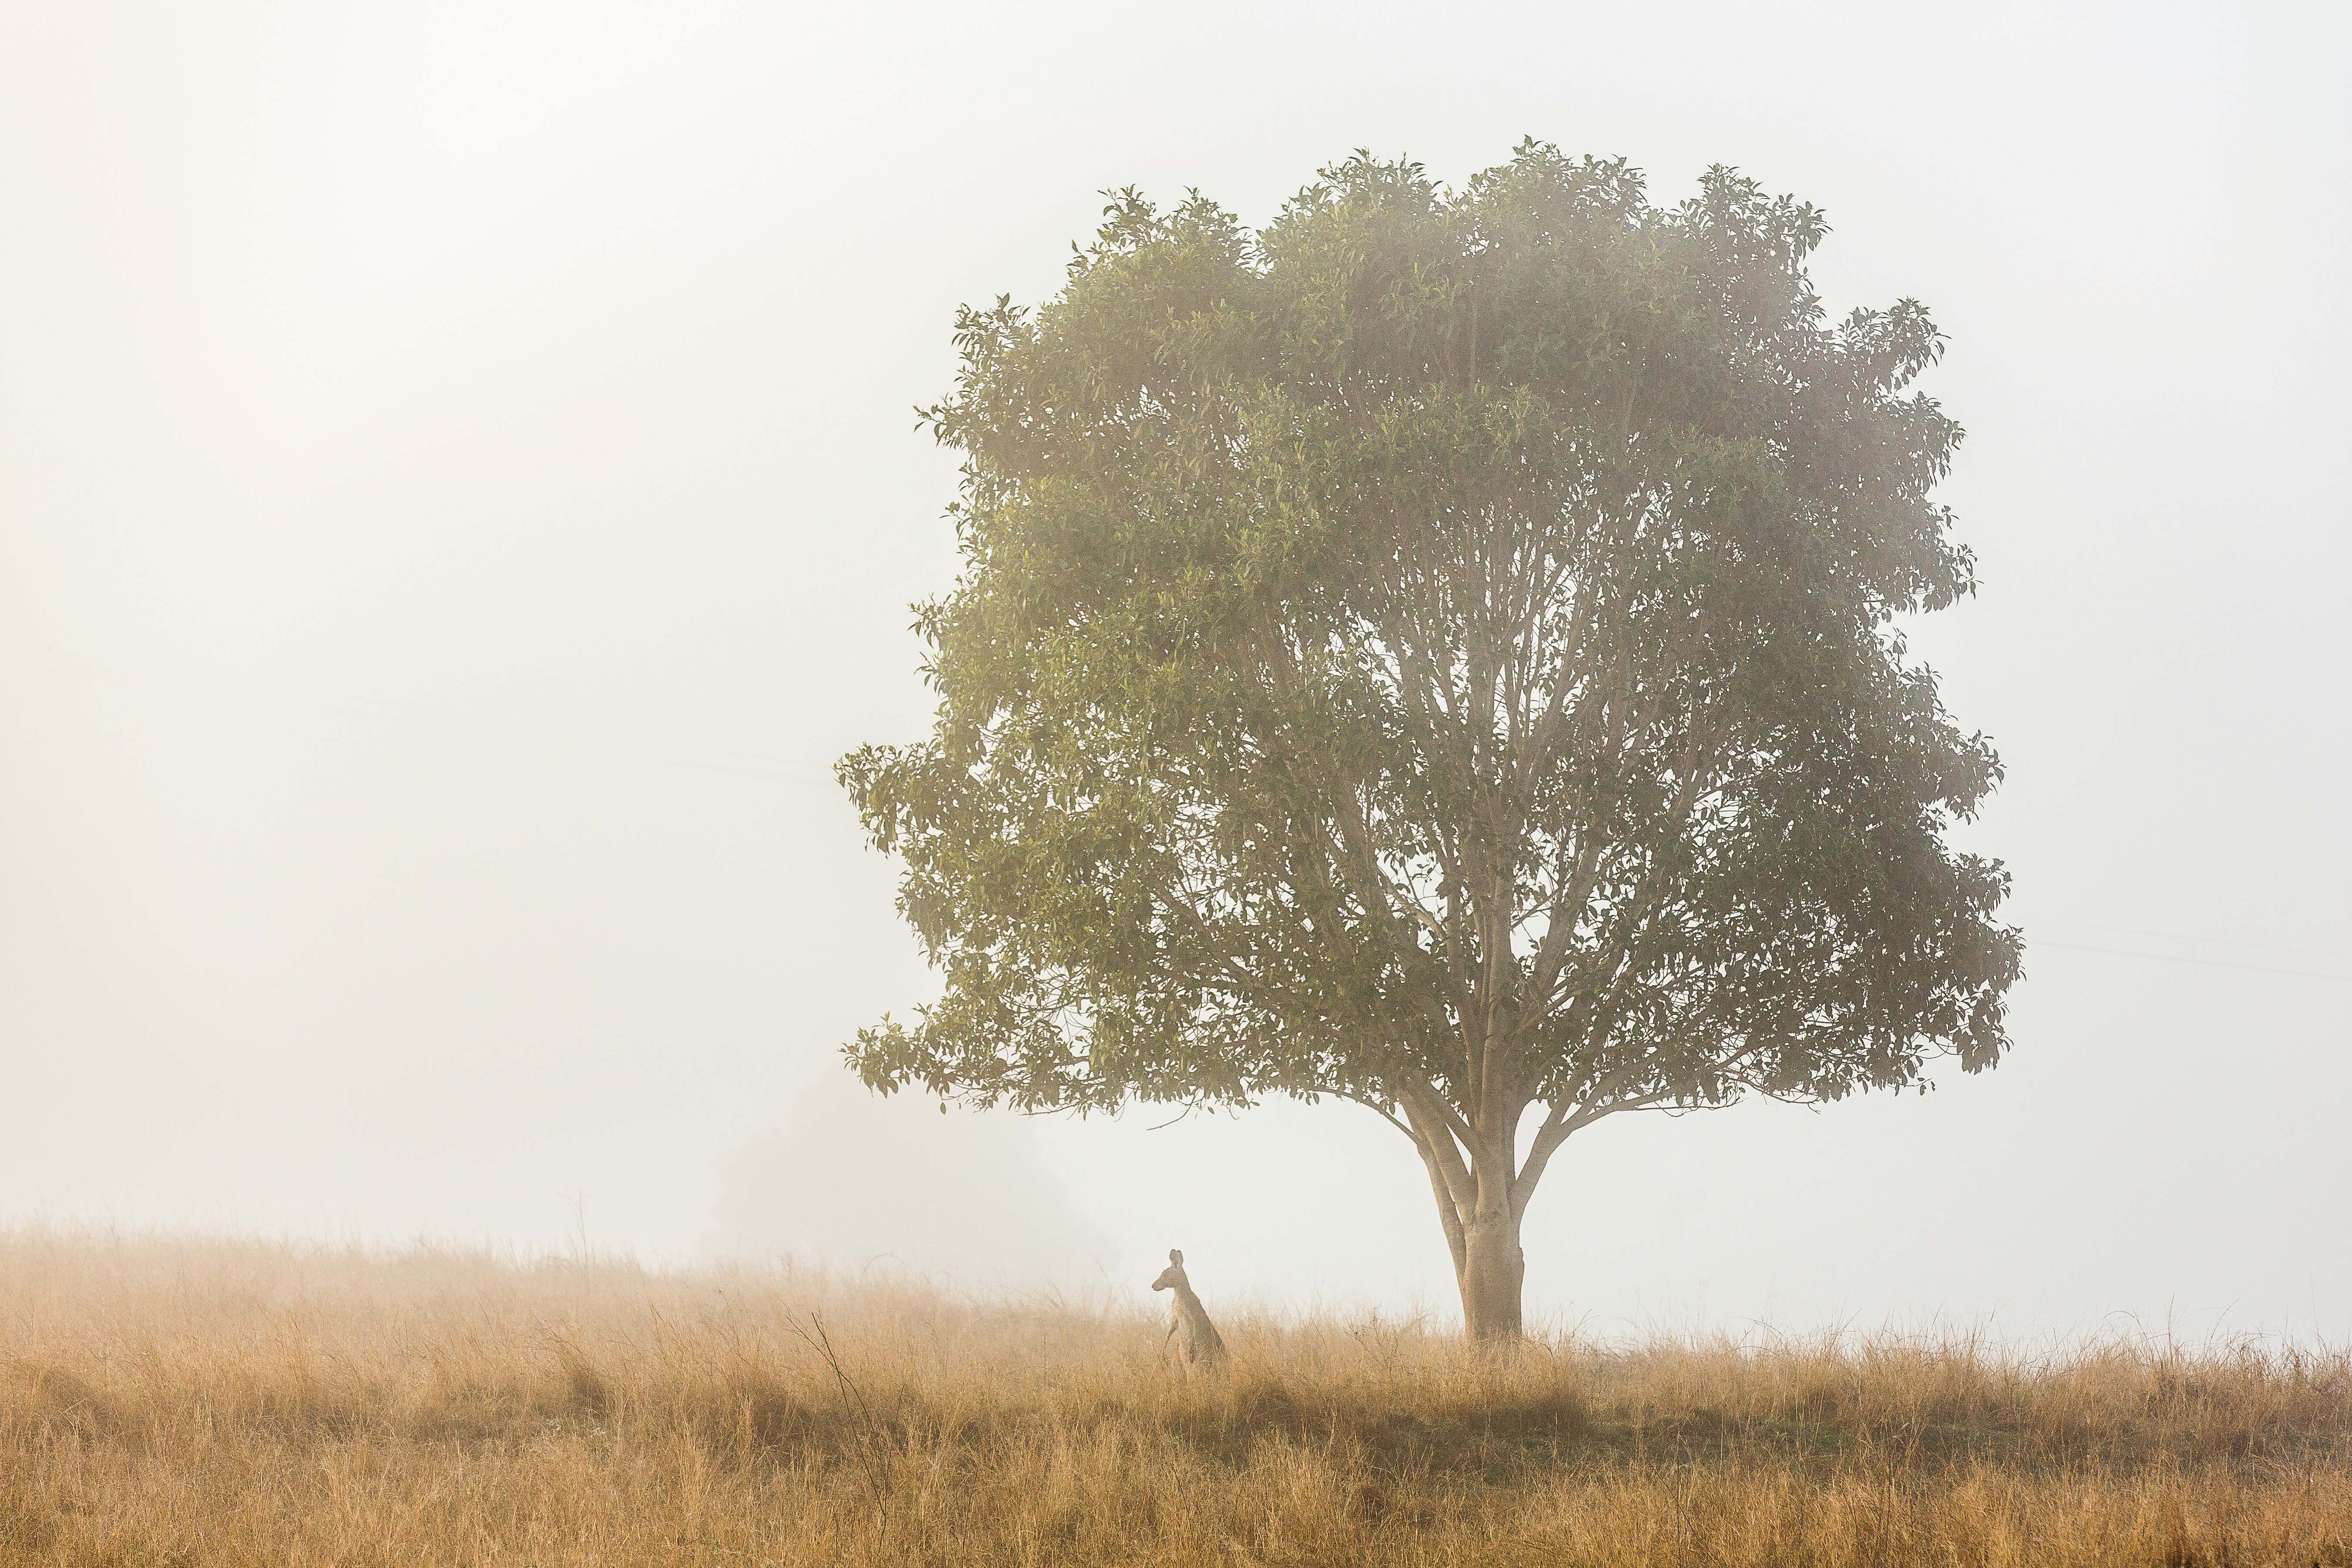 kangaroo standing under tree